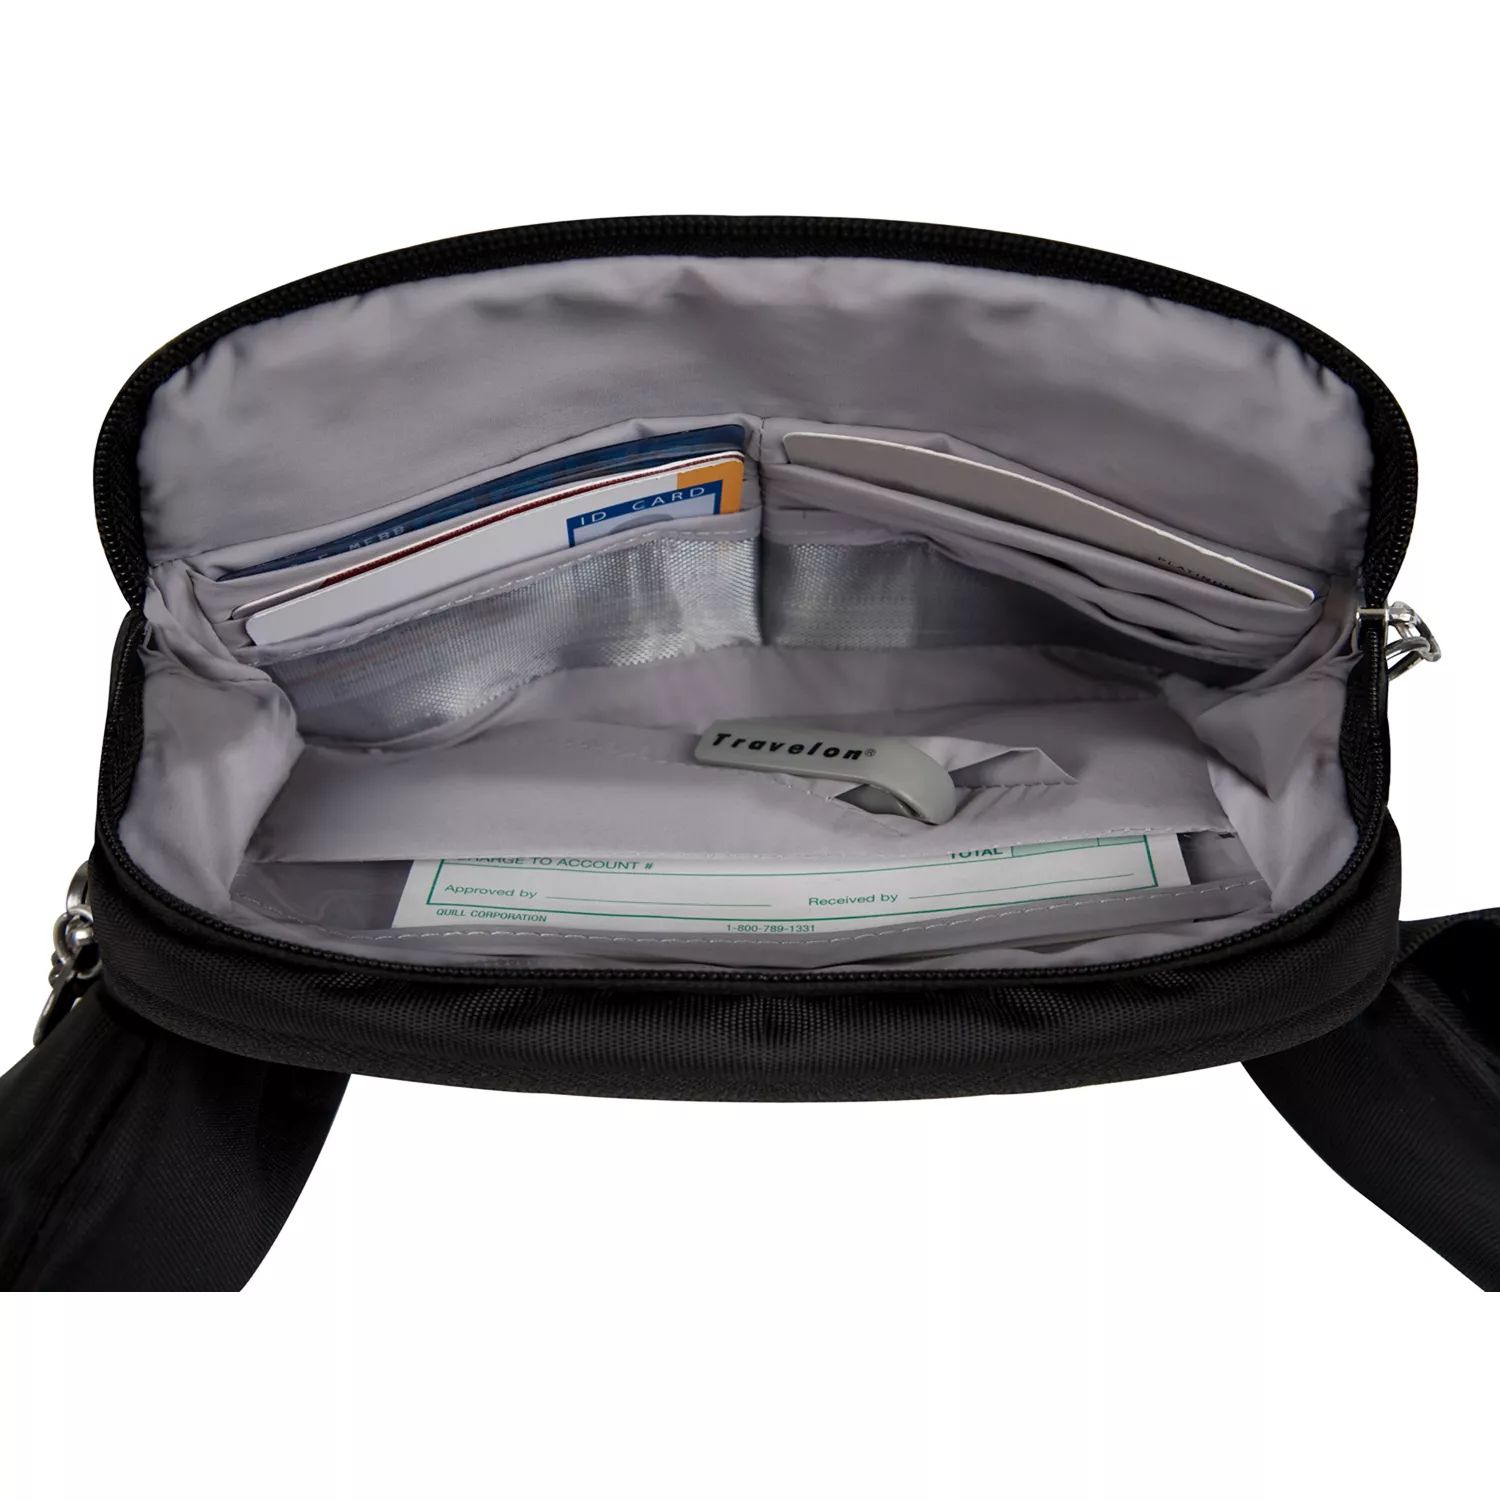 Поясной рюкзак Travelon с защитой от кражи Travelon, черный рюкзак женский из ткани оксфорд с защитой от кражи 2019